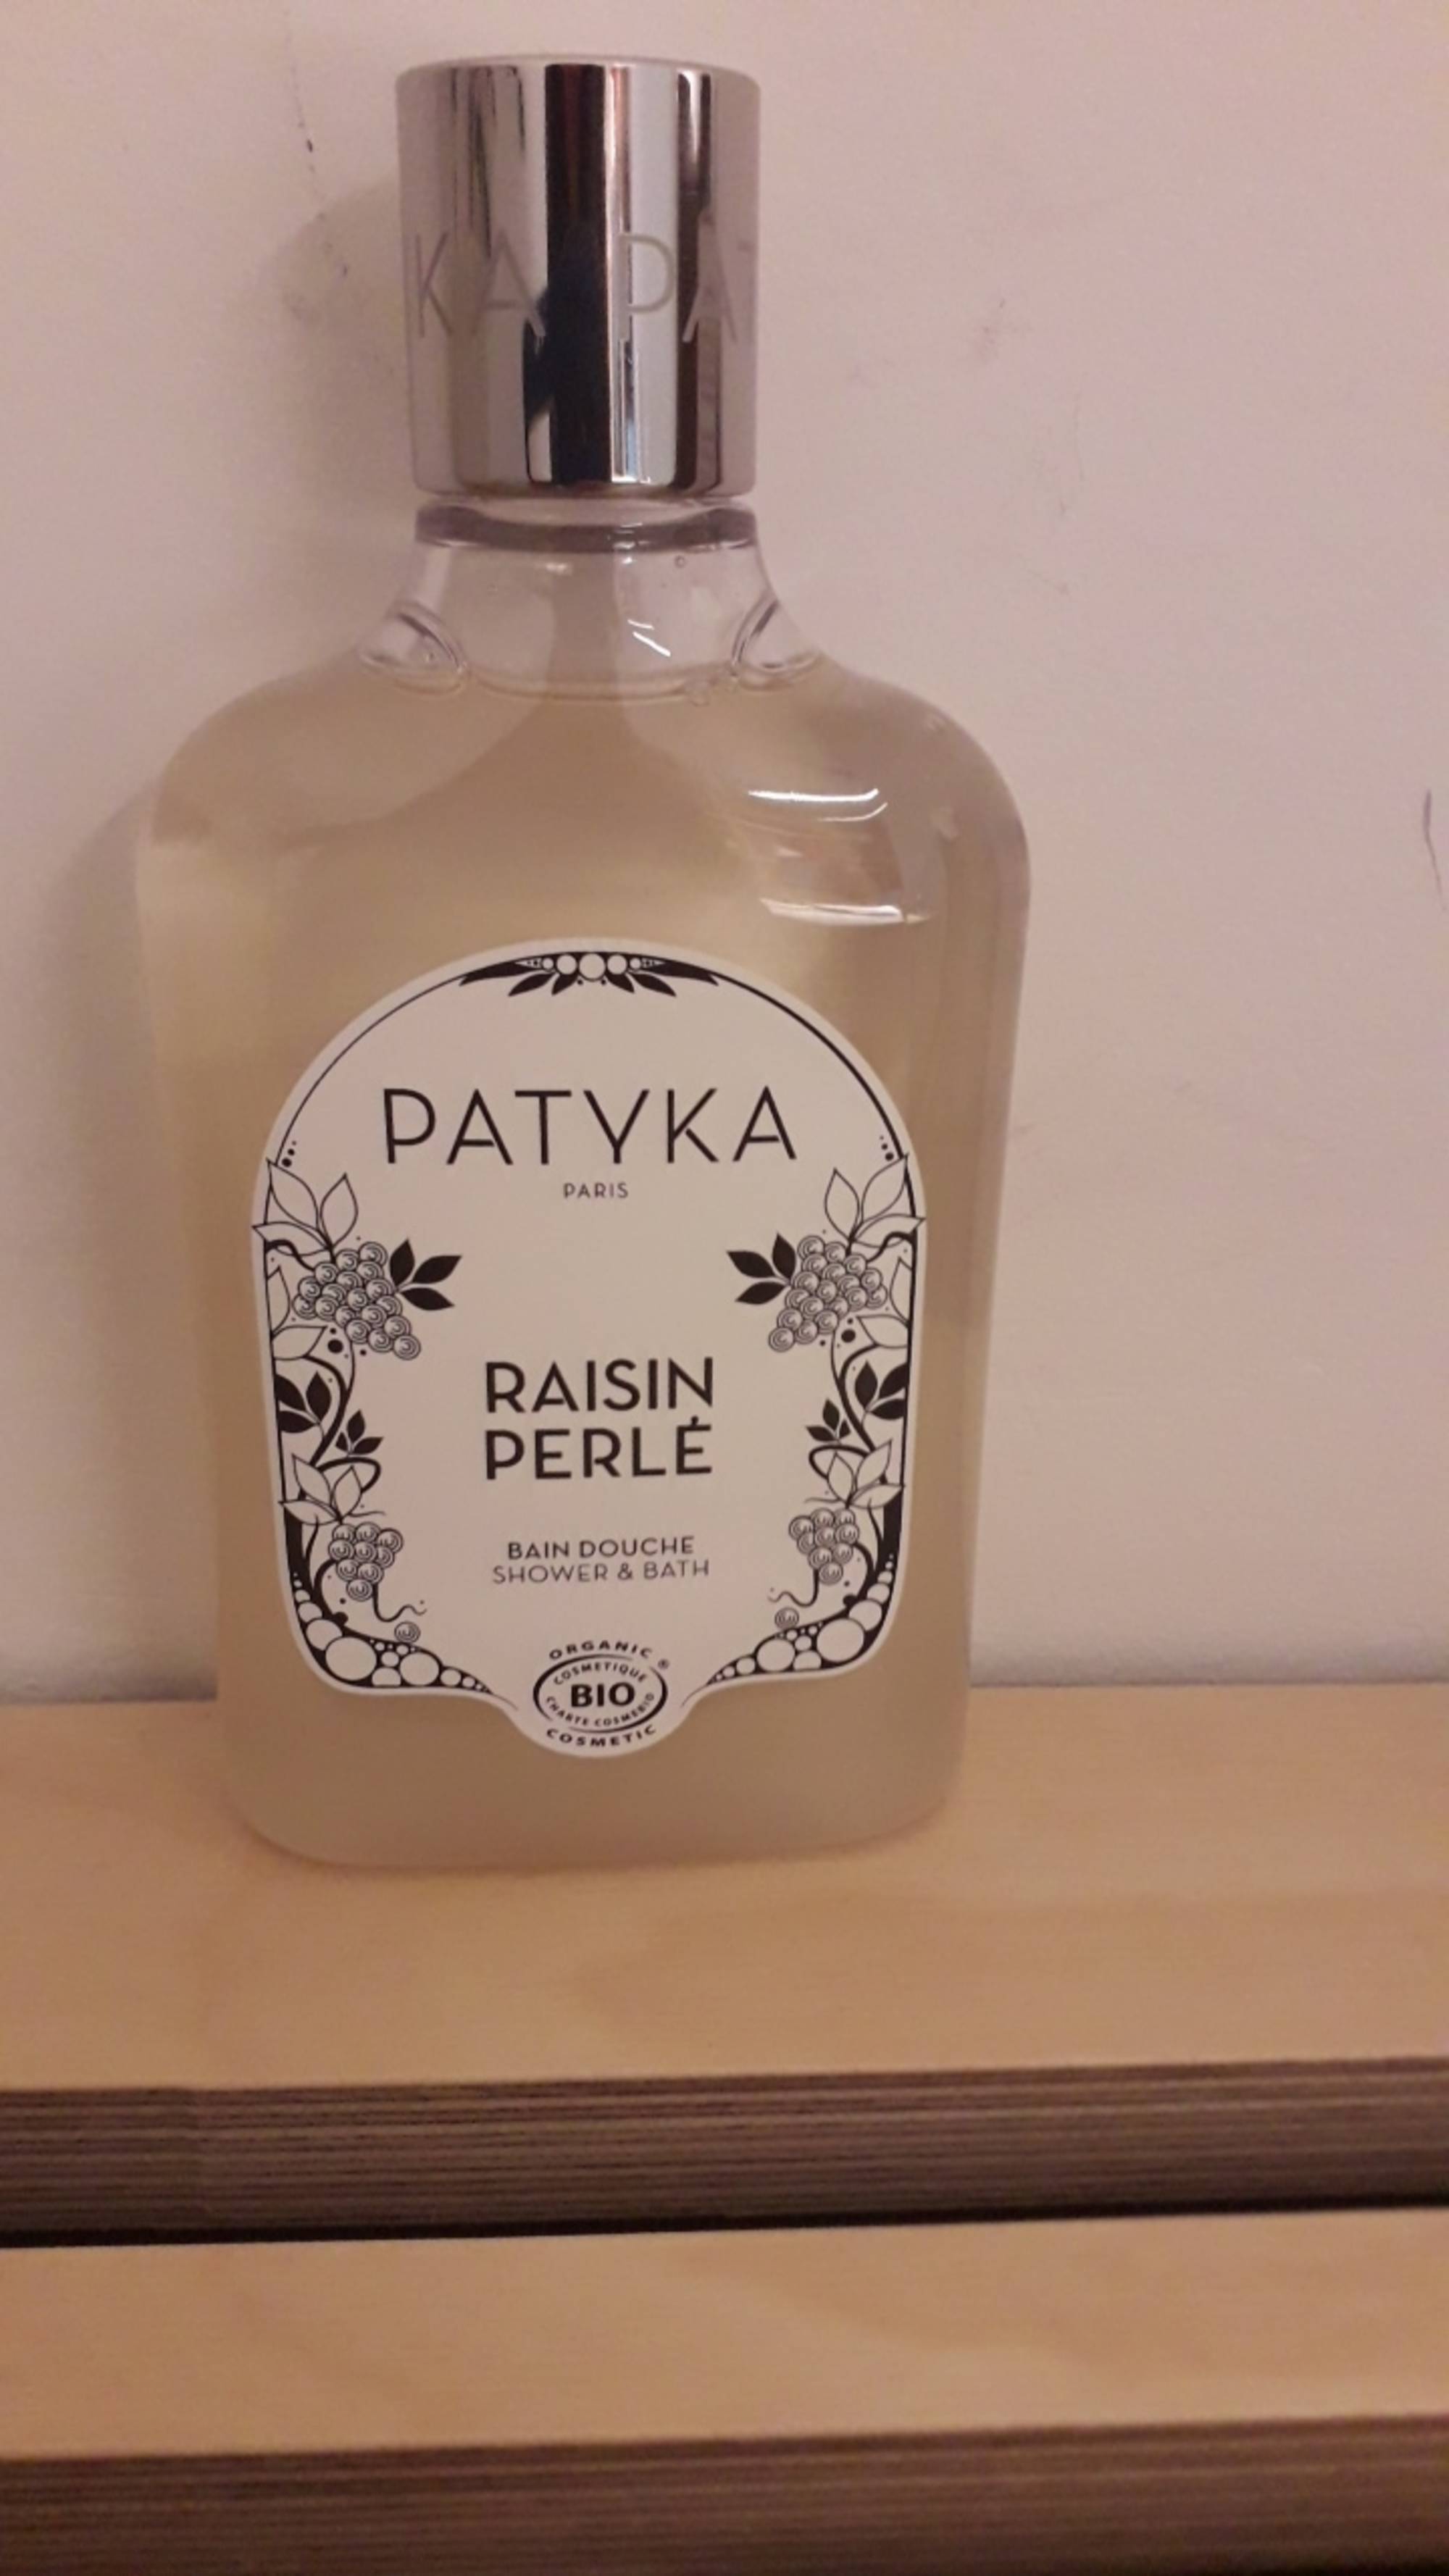 PATYKA - Raisin perlé - Bain douche